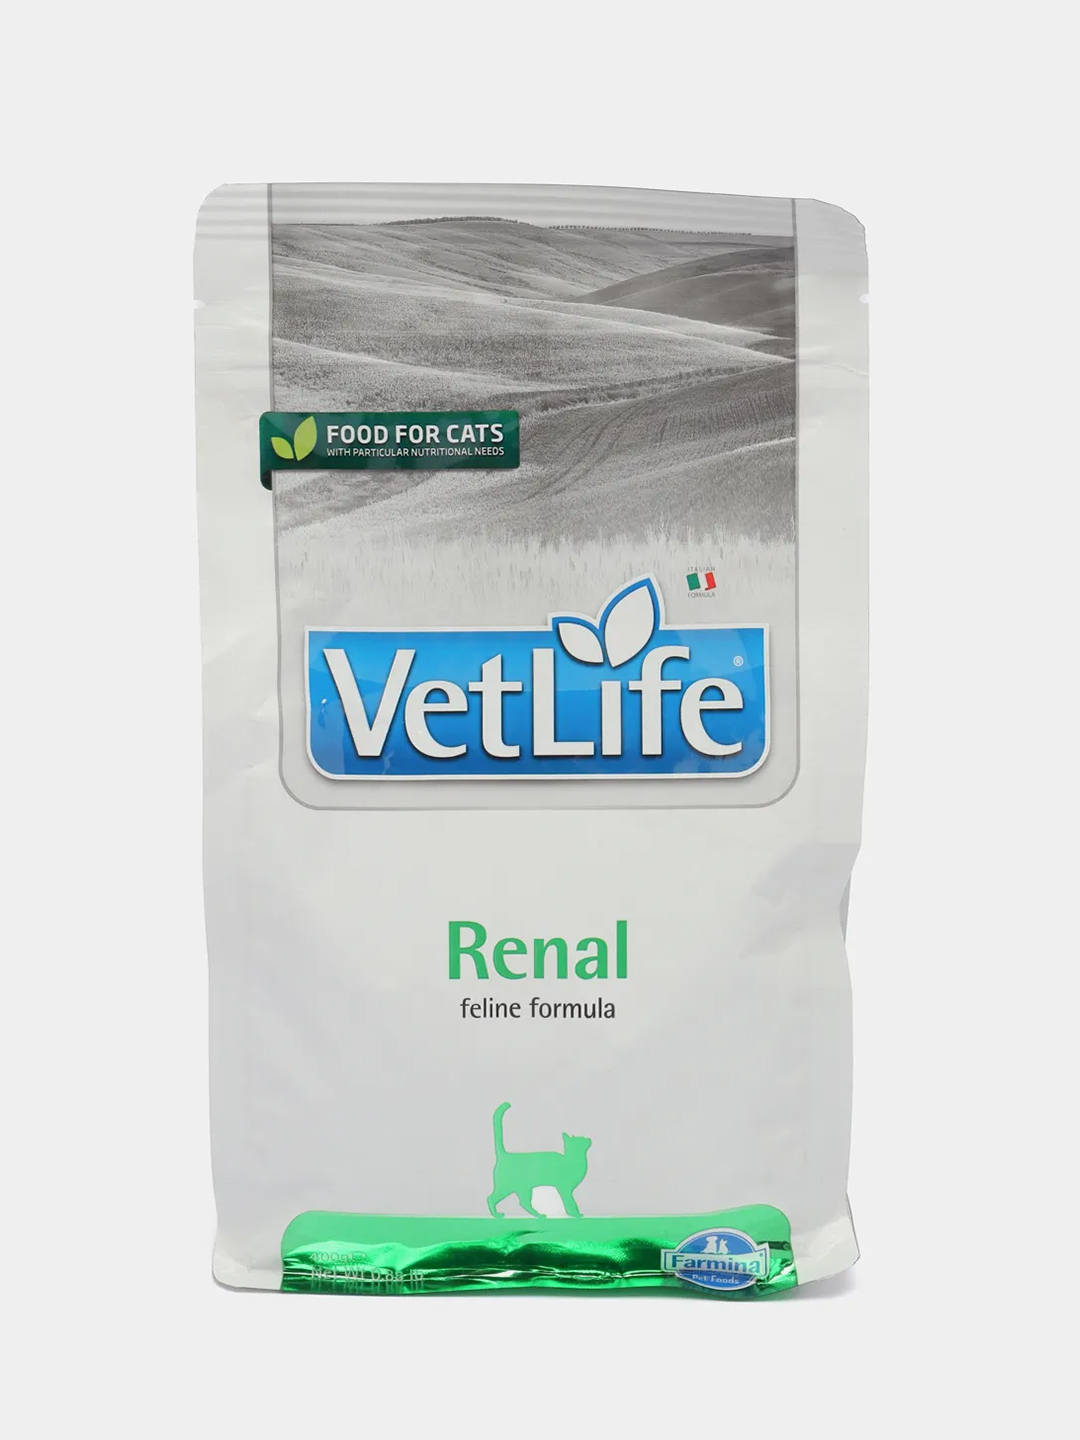 Farmina vet life renal для кошек. Farmina vet Life renal. Vet Life корм для кошек renal. Farmina vet Life renal для кошек влажный. Farmina vet Life renal консервы для кошек при заболеваниях почек.